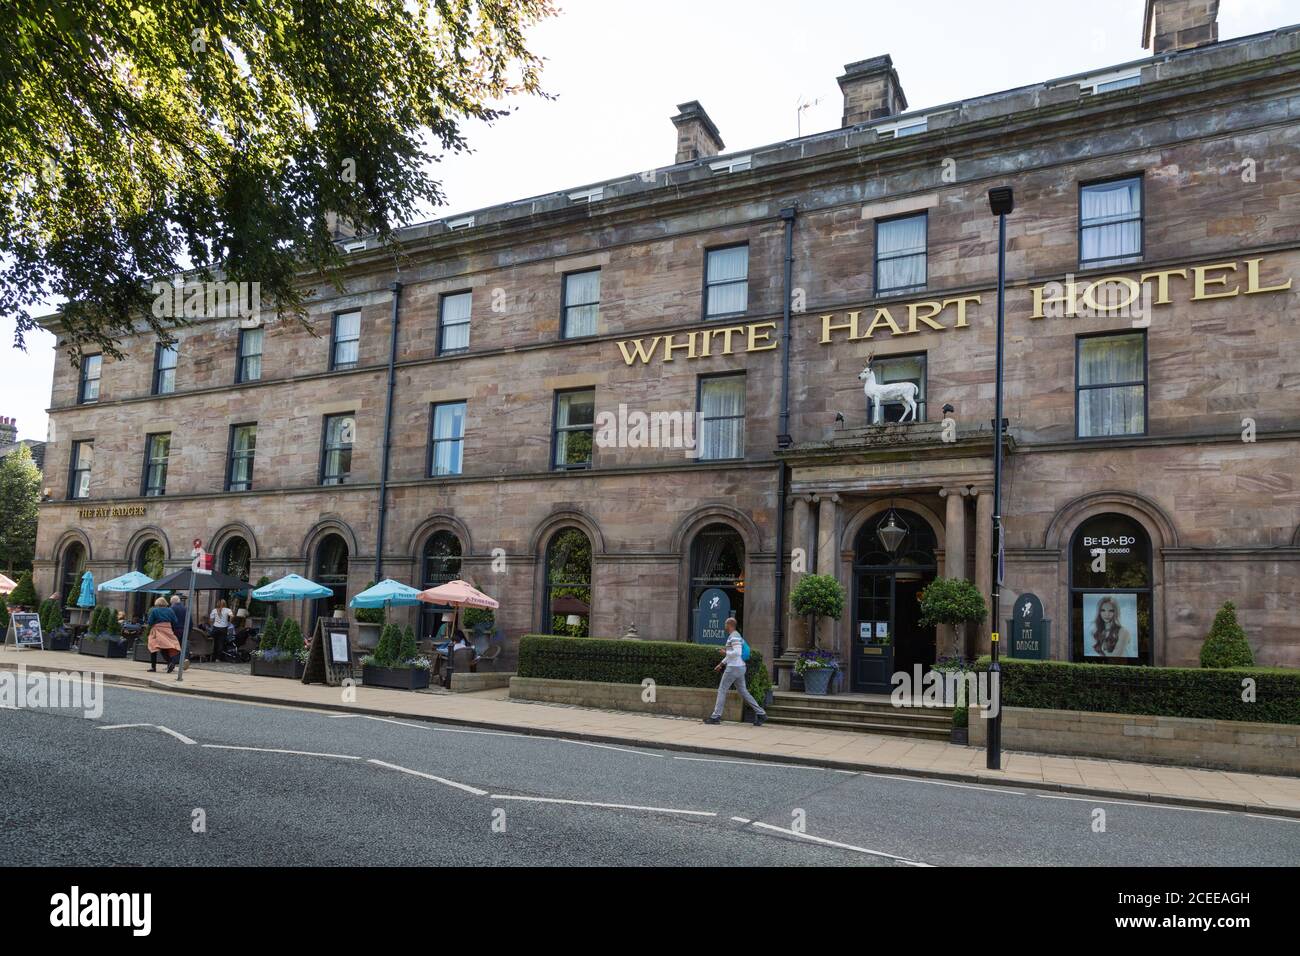 Harrogate hotel; The White Hart Hotel exterior, Harrogate town centre, Harrogate, Yorkshire UK Stock Photo